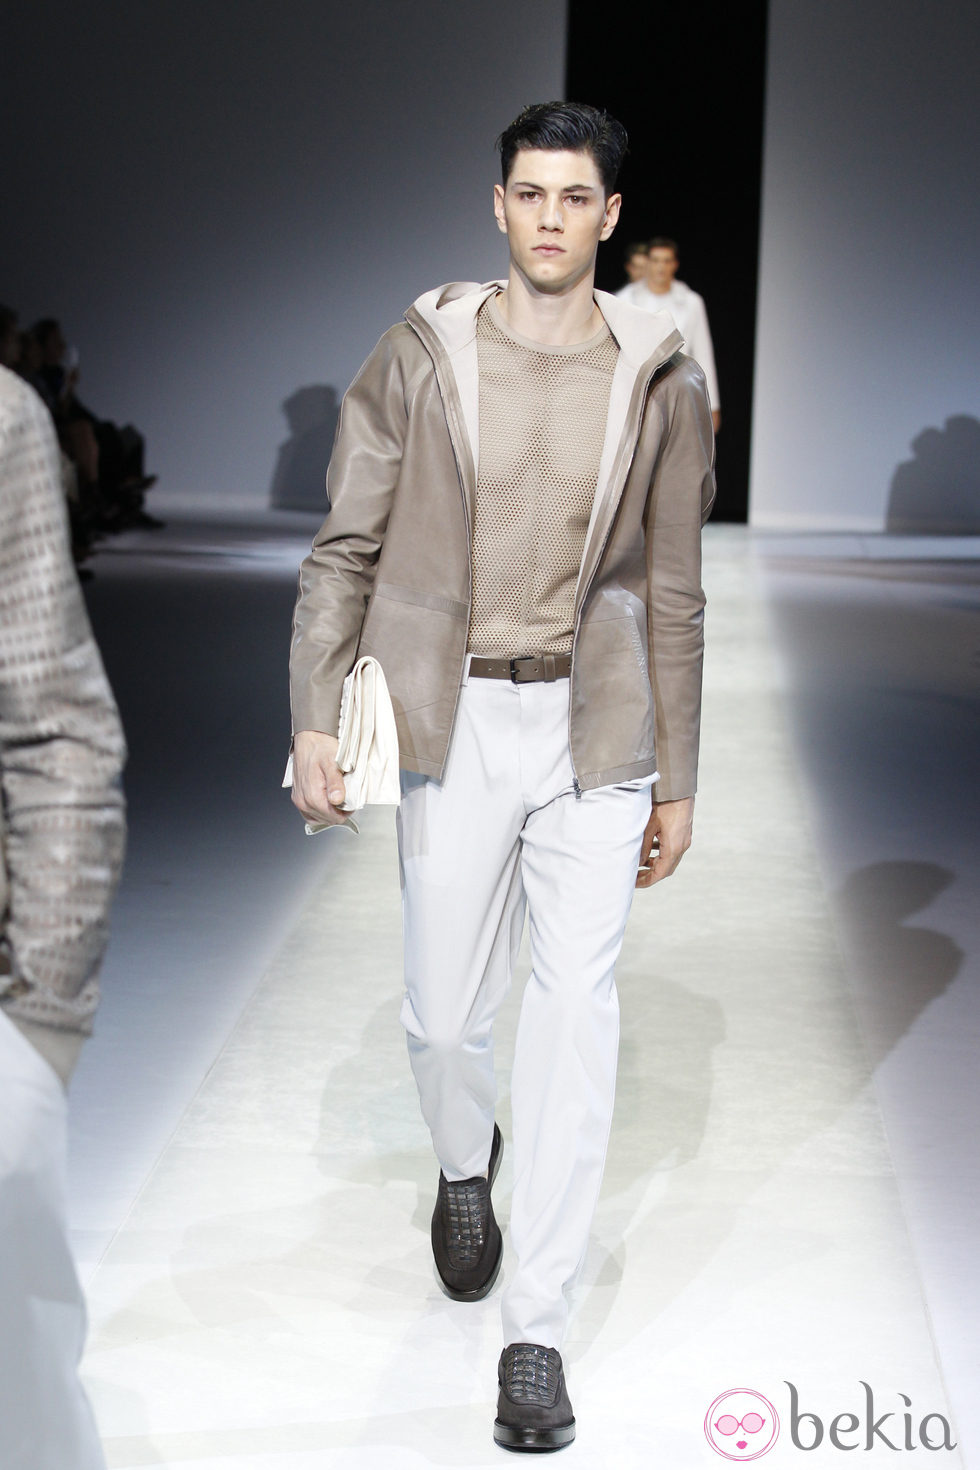 Pantalón blanco de la colección primavera/verano 2014 de Emporio Armani en la Semana de la Moda de Milán